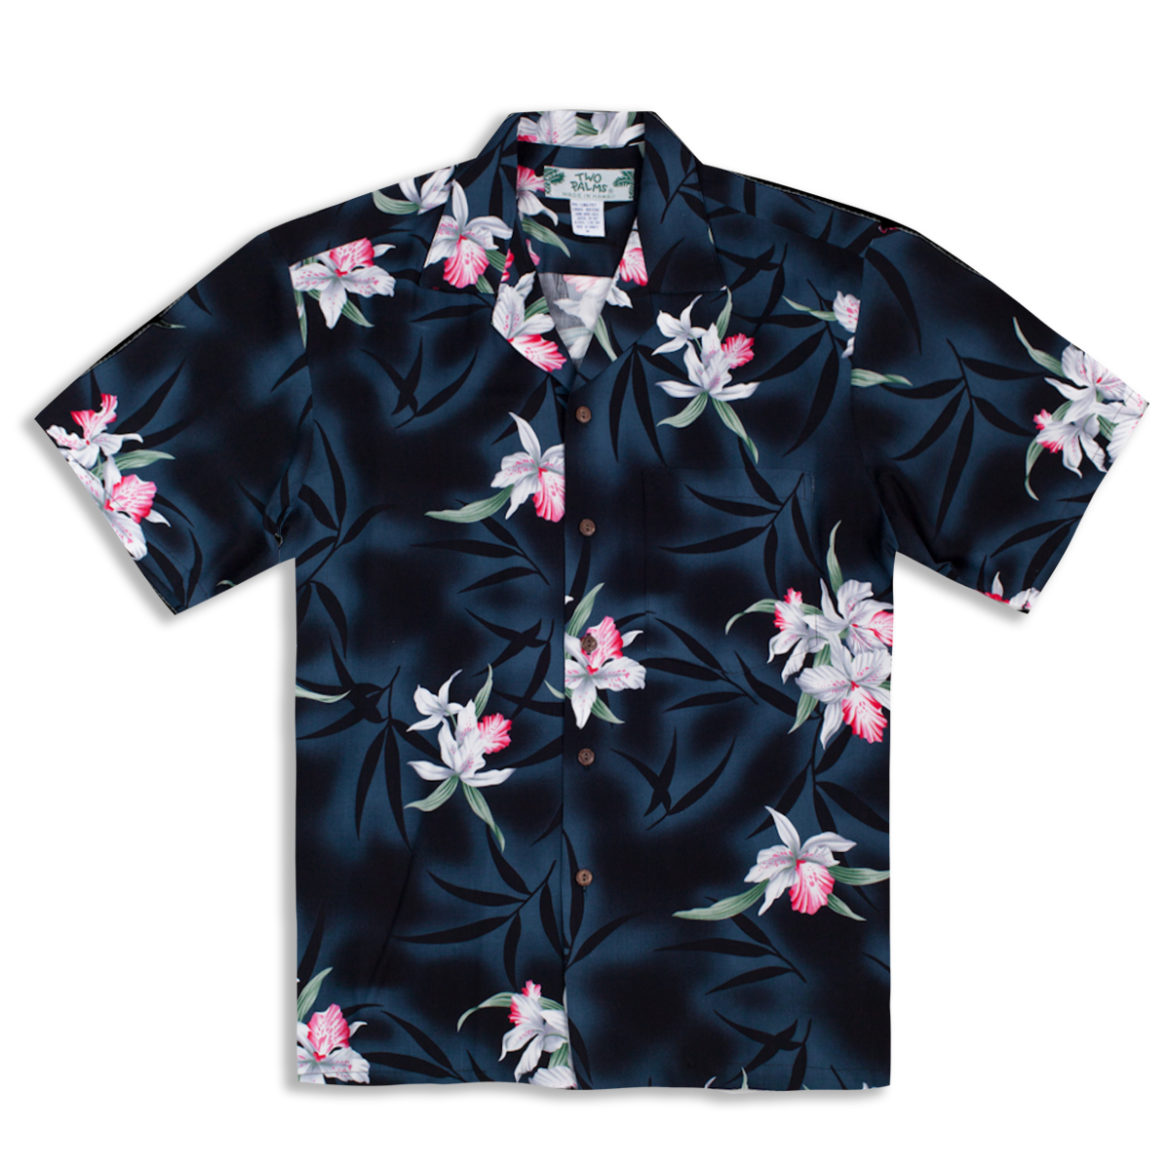 Hawaiian Shirt - Midnight Orchid - Black - M Left